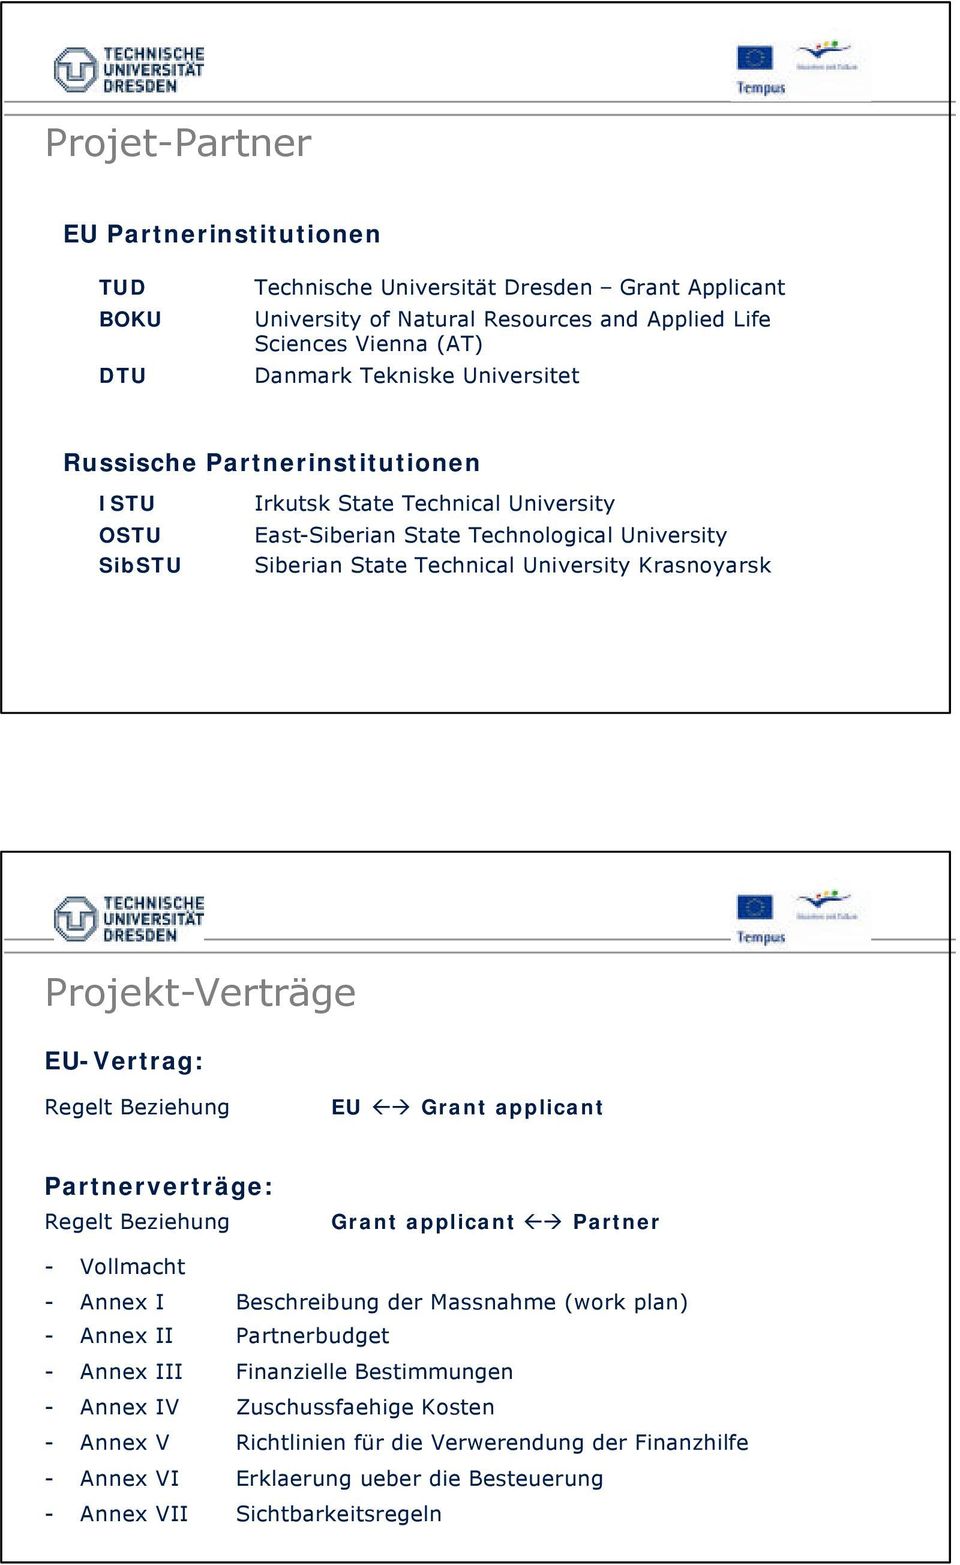 Projekt-Verträge EU-Vertrag: Regelt Beziehung EU Grant applicant Partnerverträge: Regelt Beziehung Grant applicant Partner - Vollmacht - Annex I Beschreibung der Massnahme (work plan) - Annex II